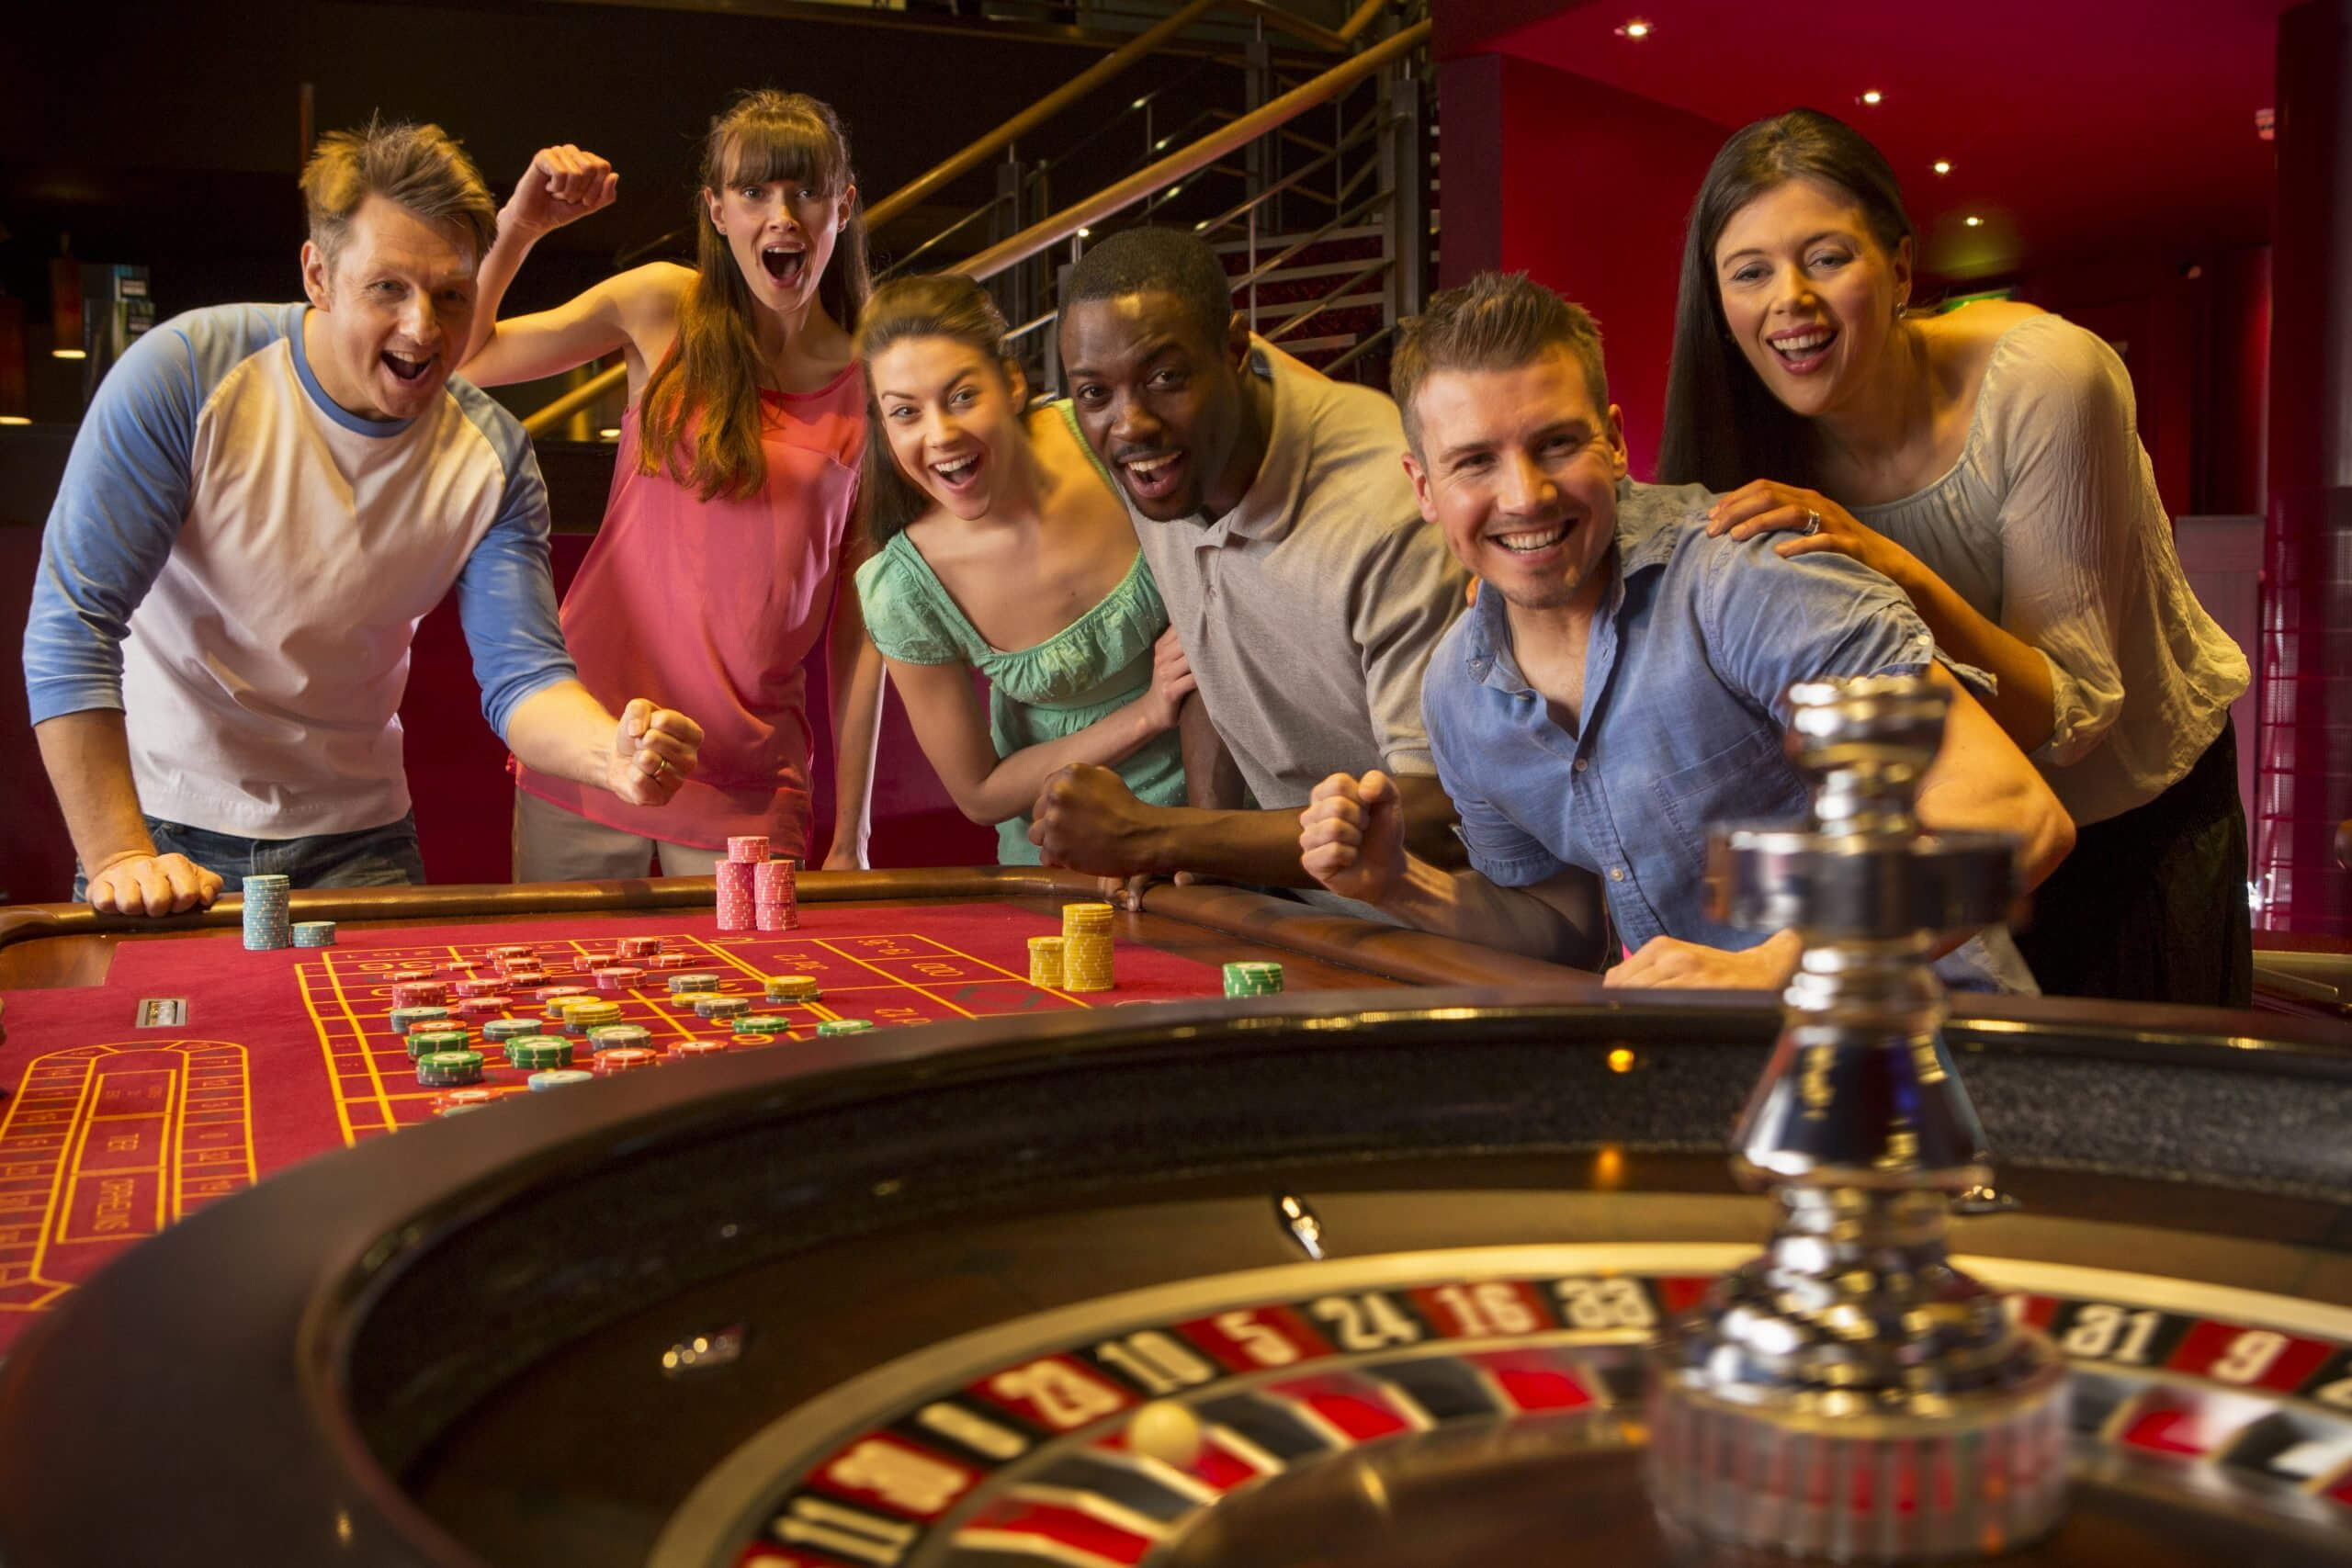 Nlim casino сайт. Казино. Люди в казино. Игрок в рулетку. Игрок в интернет казино.